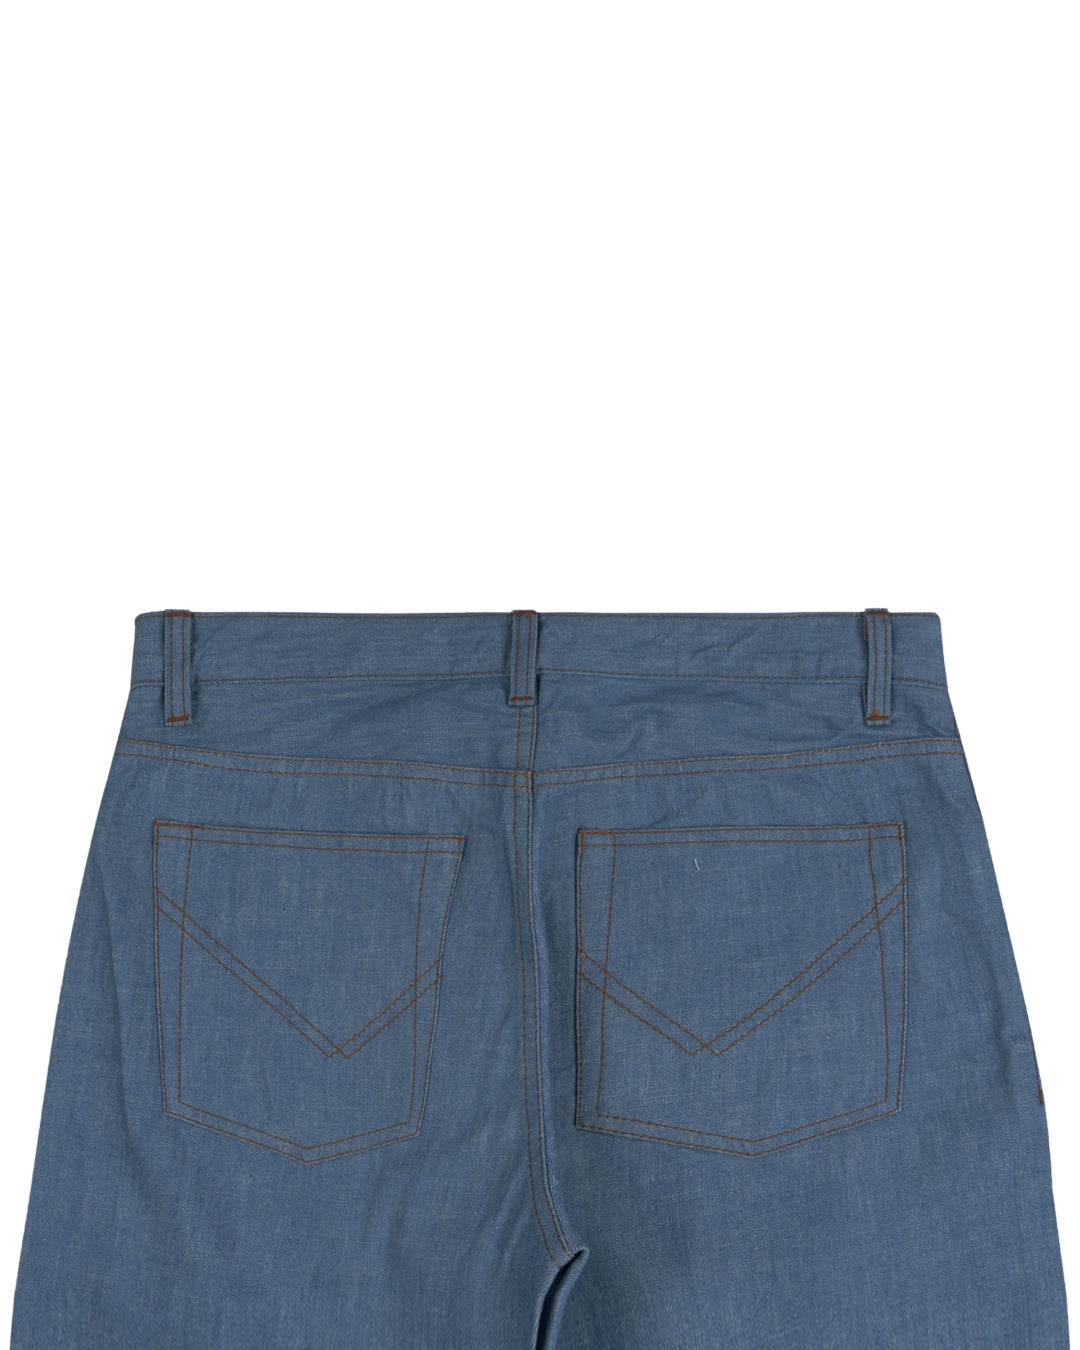 Back view of custom broken slub jeans for men by Luxire in light blue